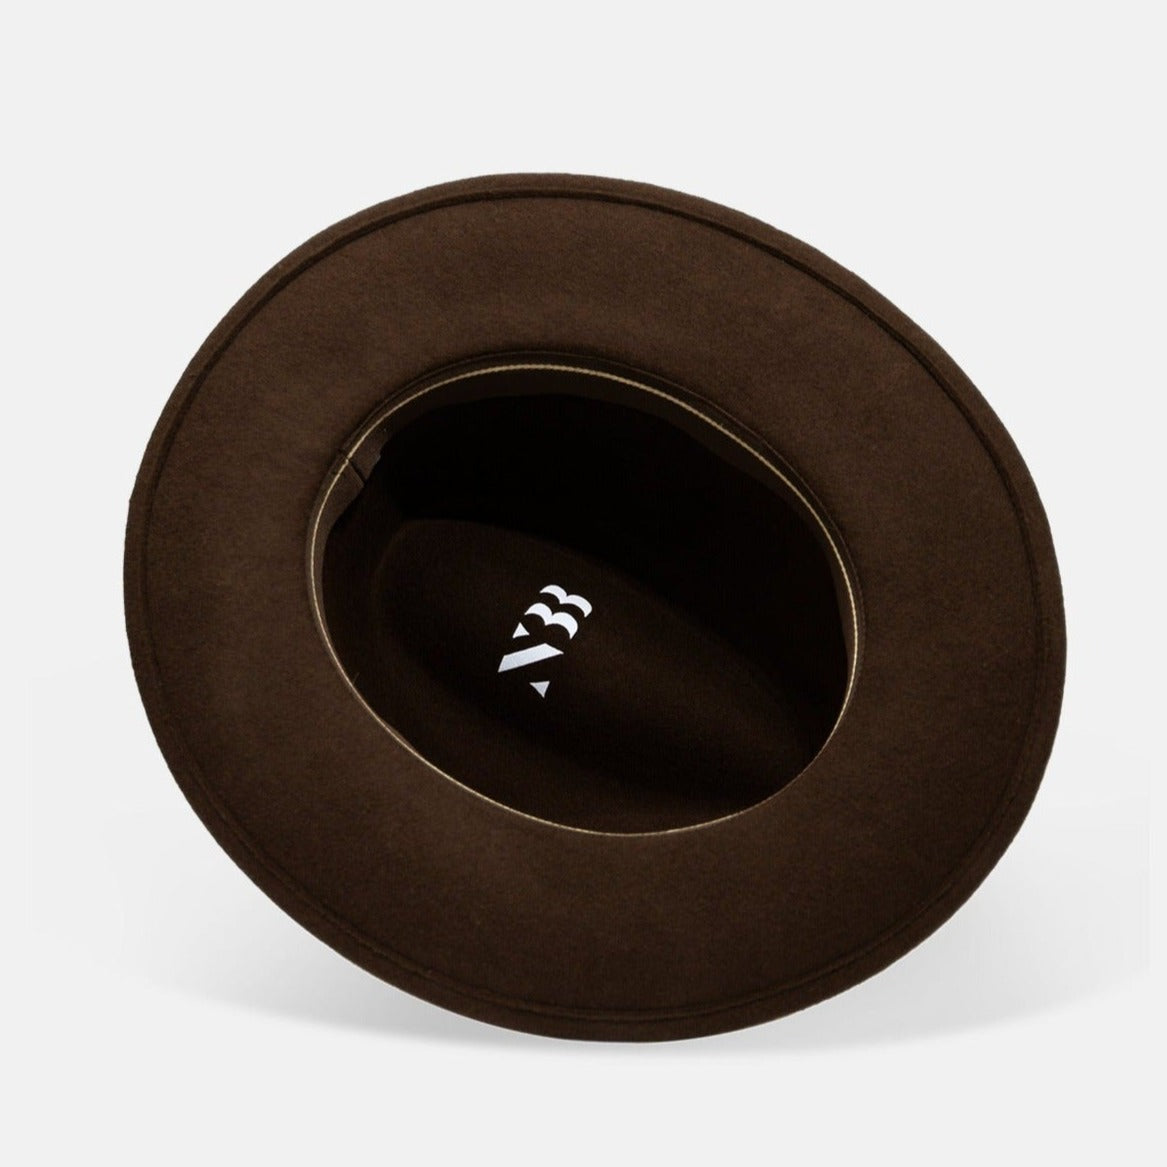 NTHIRTYTHREE - N33 - Fedora Felt Hat - Tilby Brown - handmade in Europe